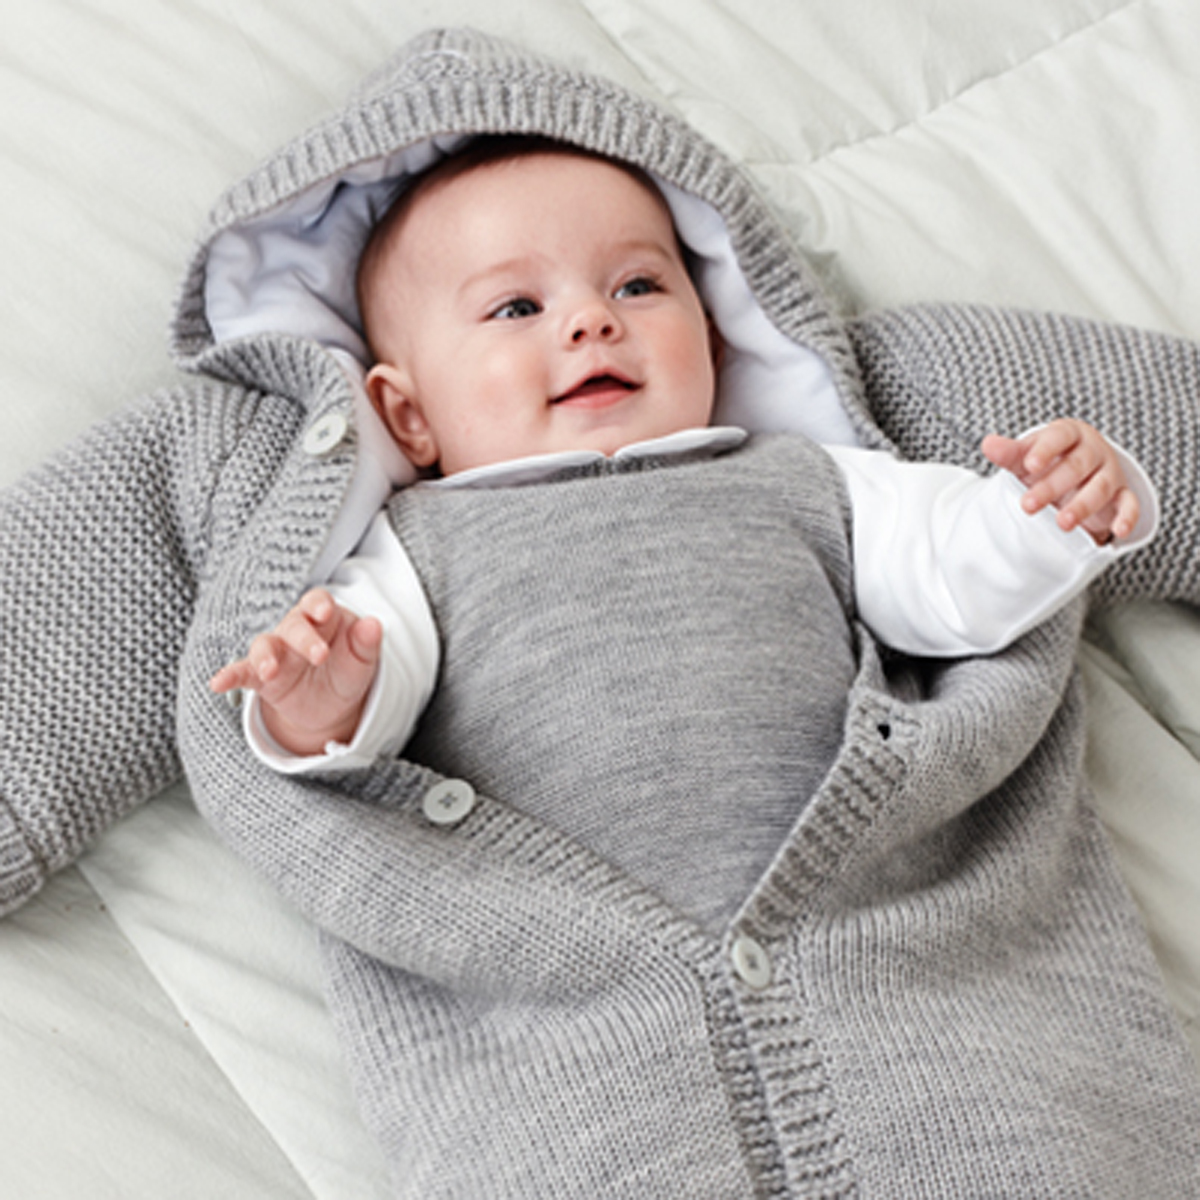 Áo dài tay cho bé vào mùa đông sẽ giúp trẻ được ấm áp hơn